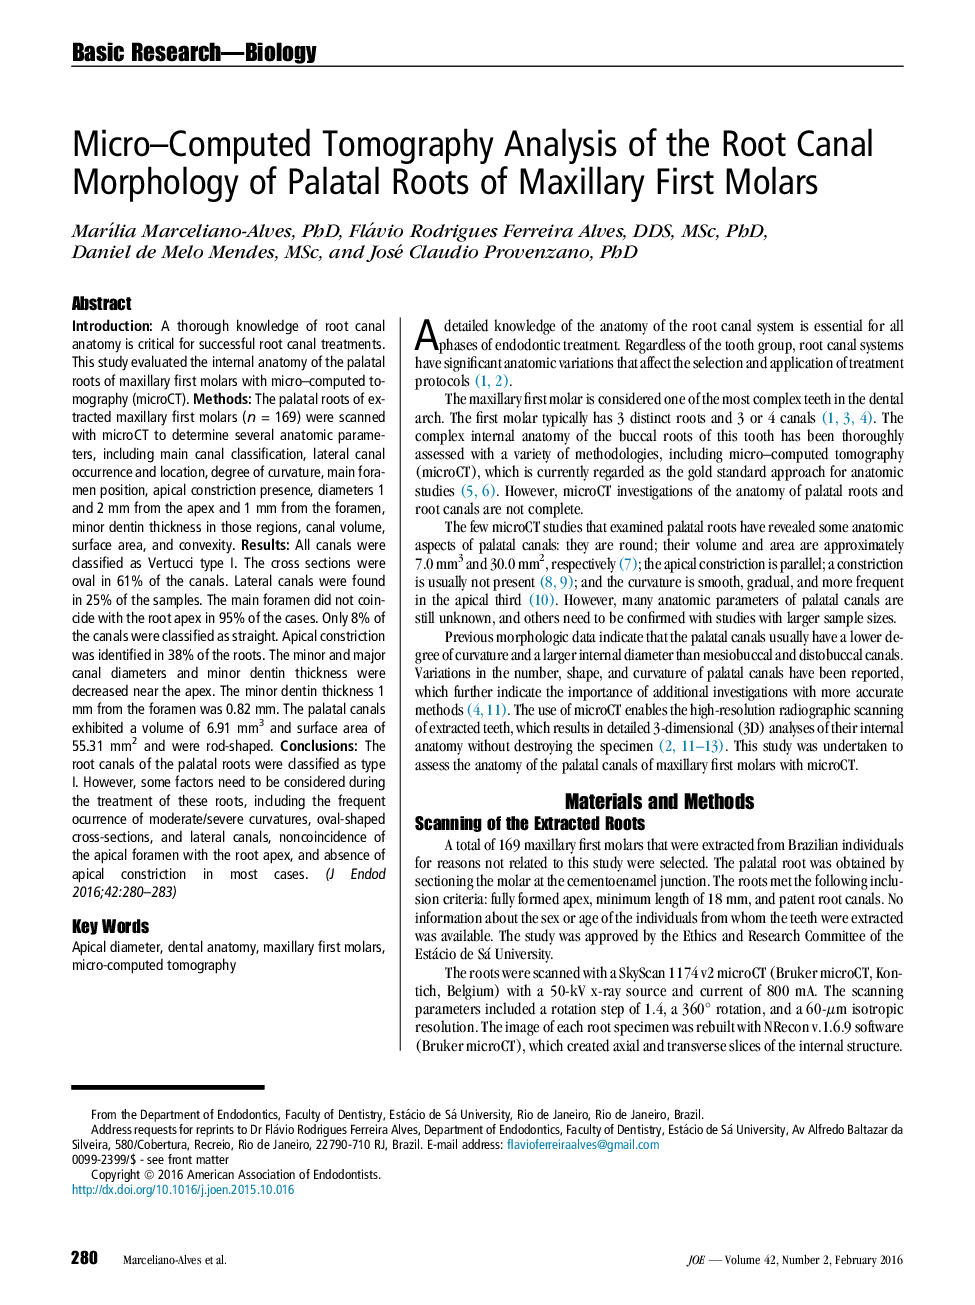 تجزیه و تحلیل توموگرافی میکرومحاسباتی از مورفولوژی کانال ریشه ریشه های پالاتال مولرهای اول ماگزیلاری